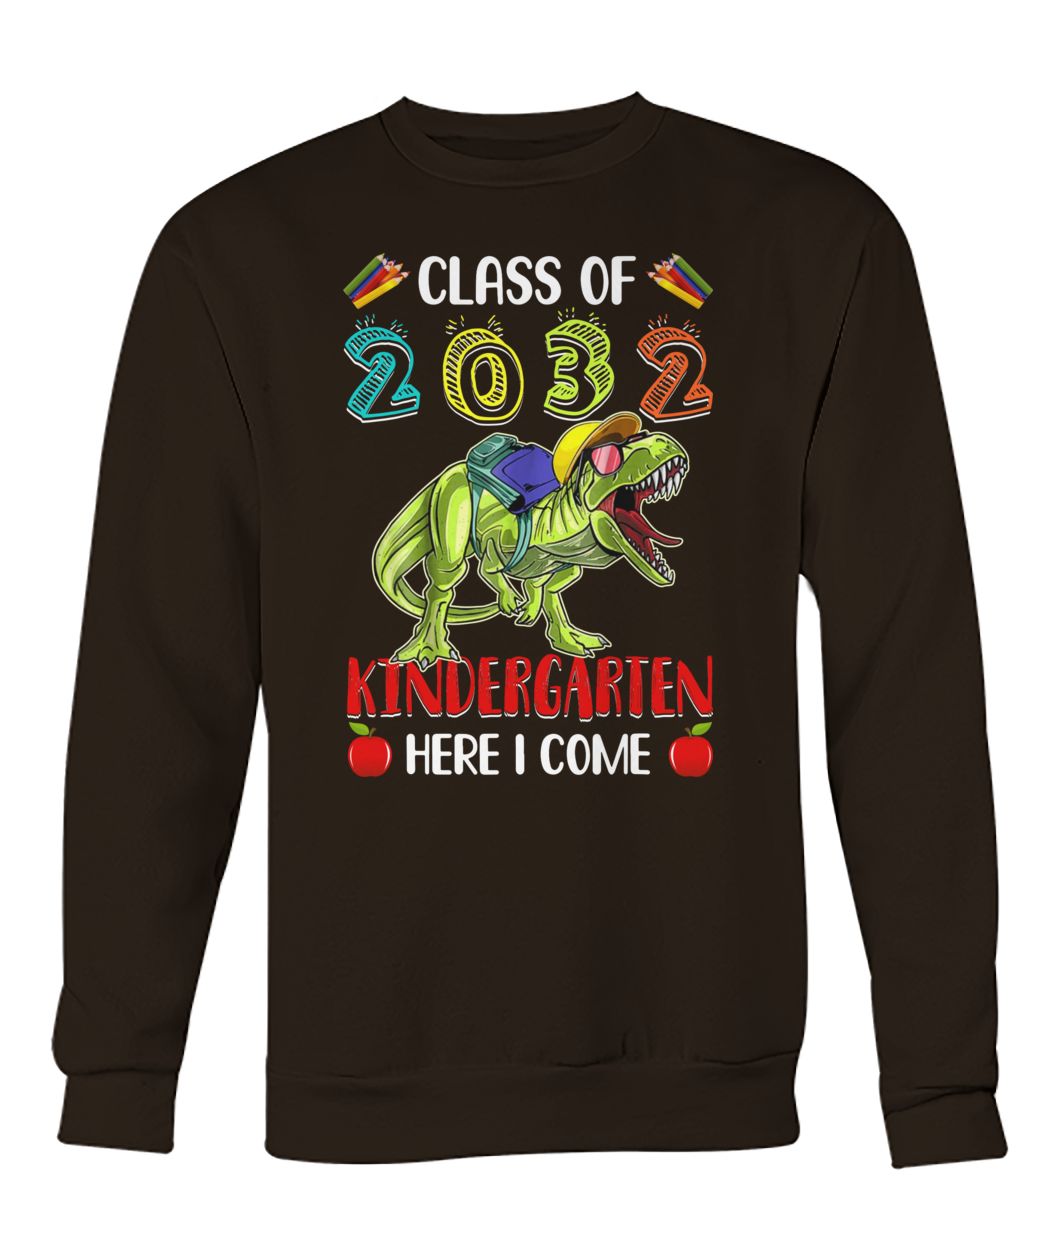 T-rex class of 2032 kindergarten here I come crew neck sweatshirt